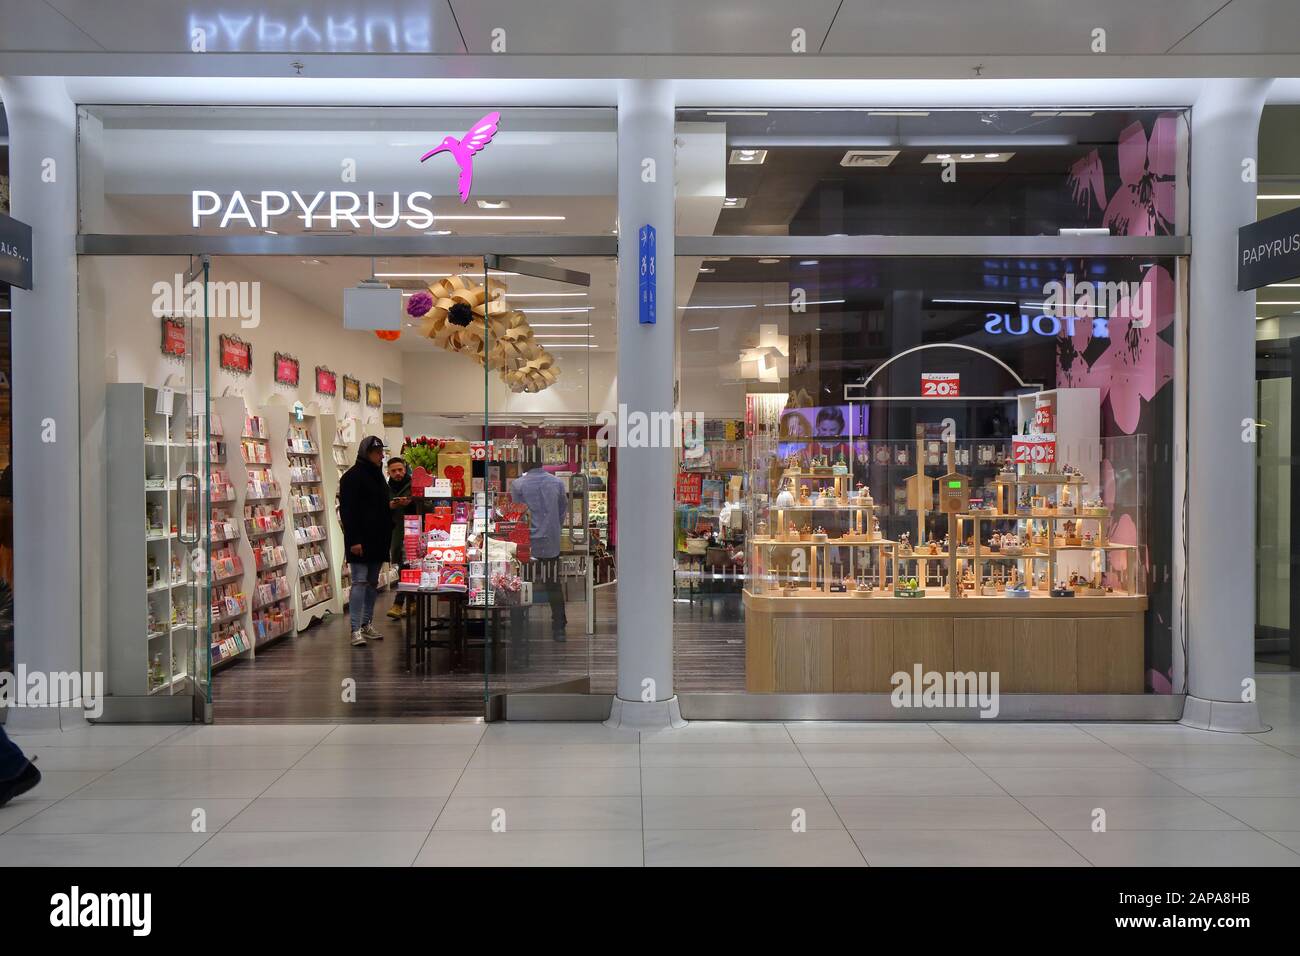 Magasin de papyrus dans le centre commercial World Trade Center Oculus, New York, NY. Janvier 2020. Banque D'Images